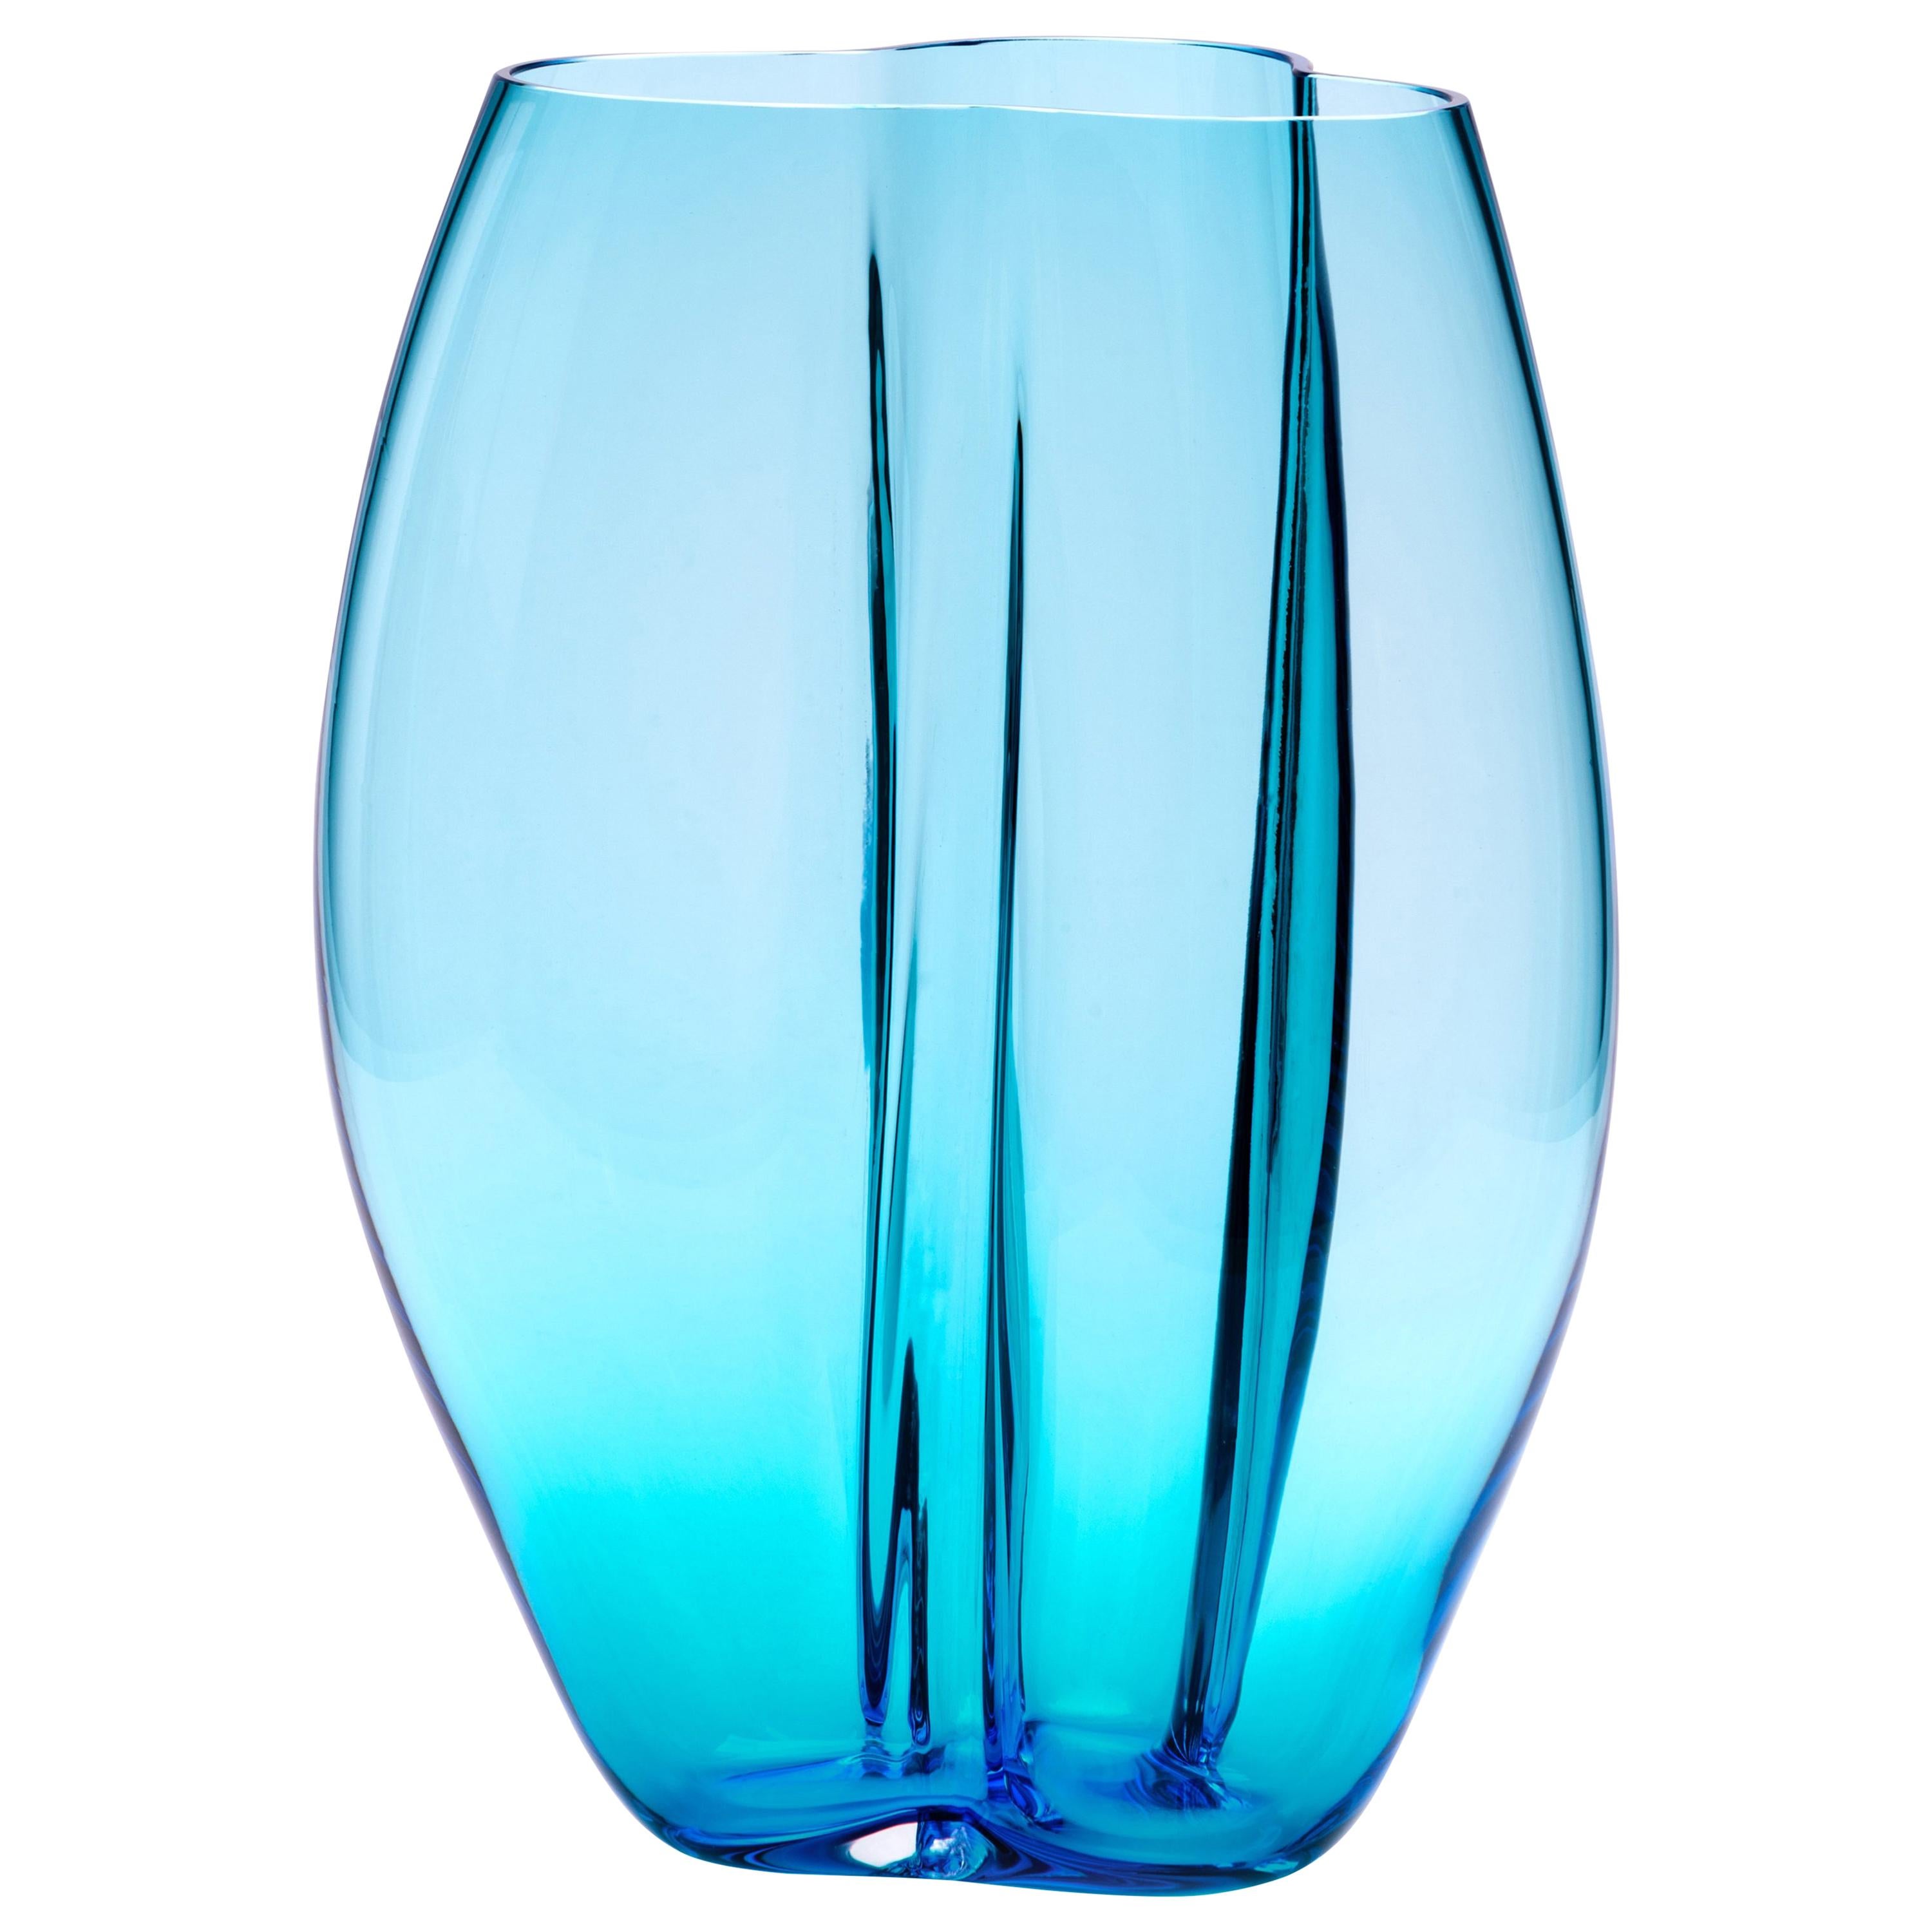 21st Century Alessandro Mendini Murano Glass Large Vase Ocean Blue 